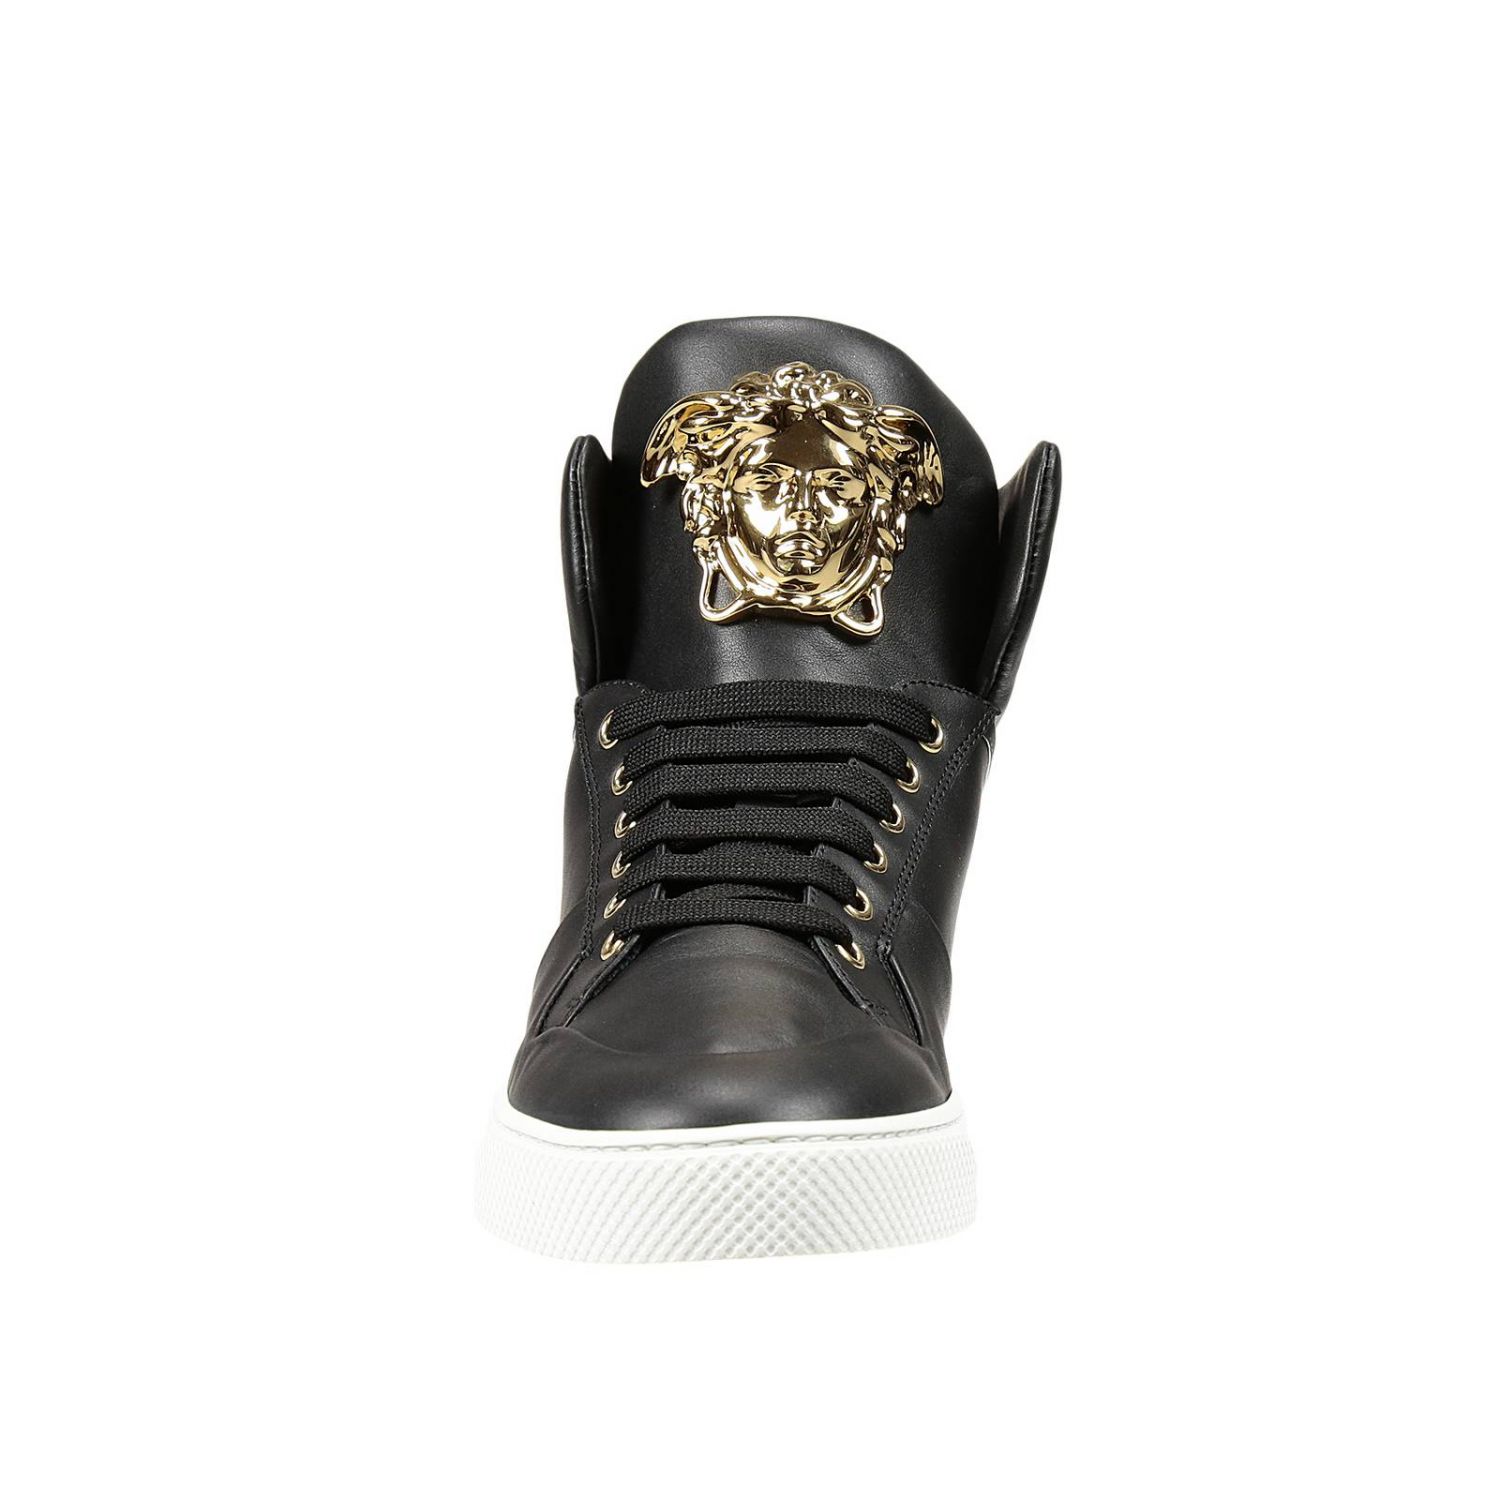 Versace Outlet: SNEAKERS PELLE CON MEDUSA | Sneakers Versace Uomo Nero |  Sneakers Versace dsu5644 dvg3g GIGLIO.COM